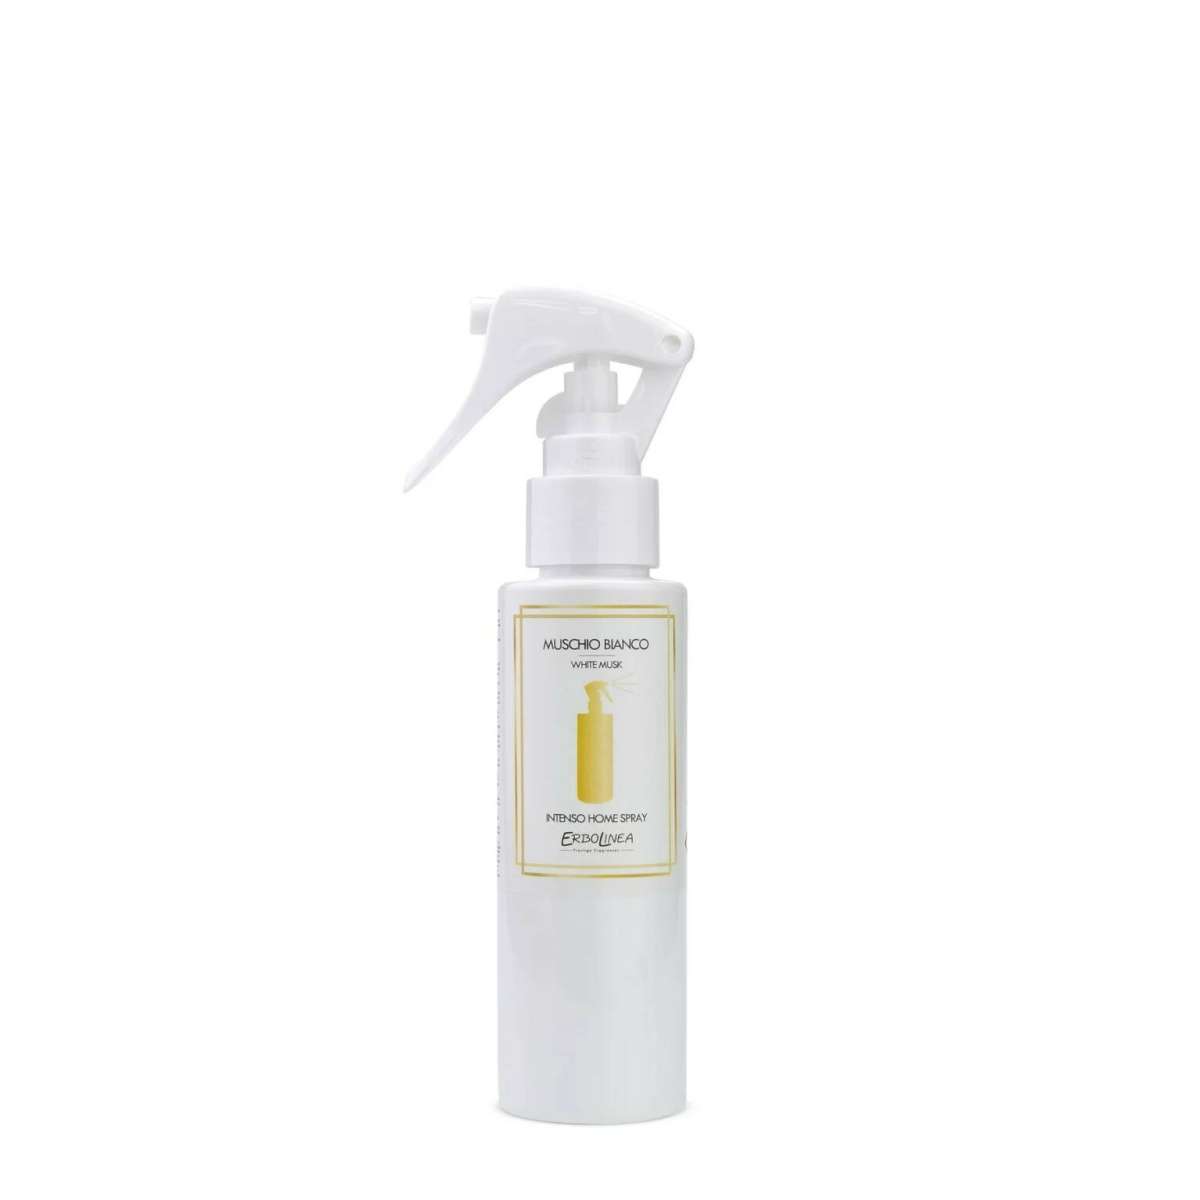 Immagine del prodotto Home Spray per Ambiente Muschio Bianco 100 ml | Erbolinea Prestige